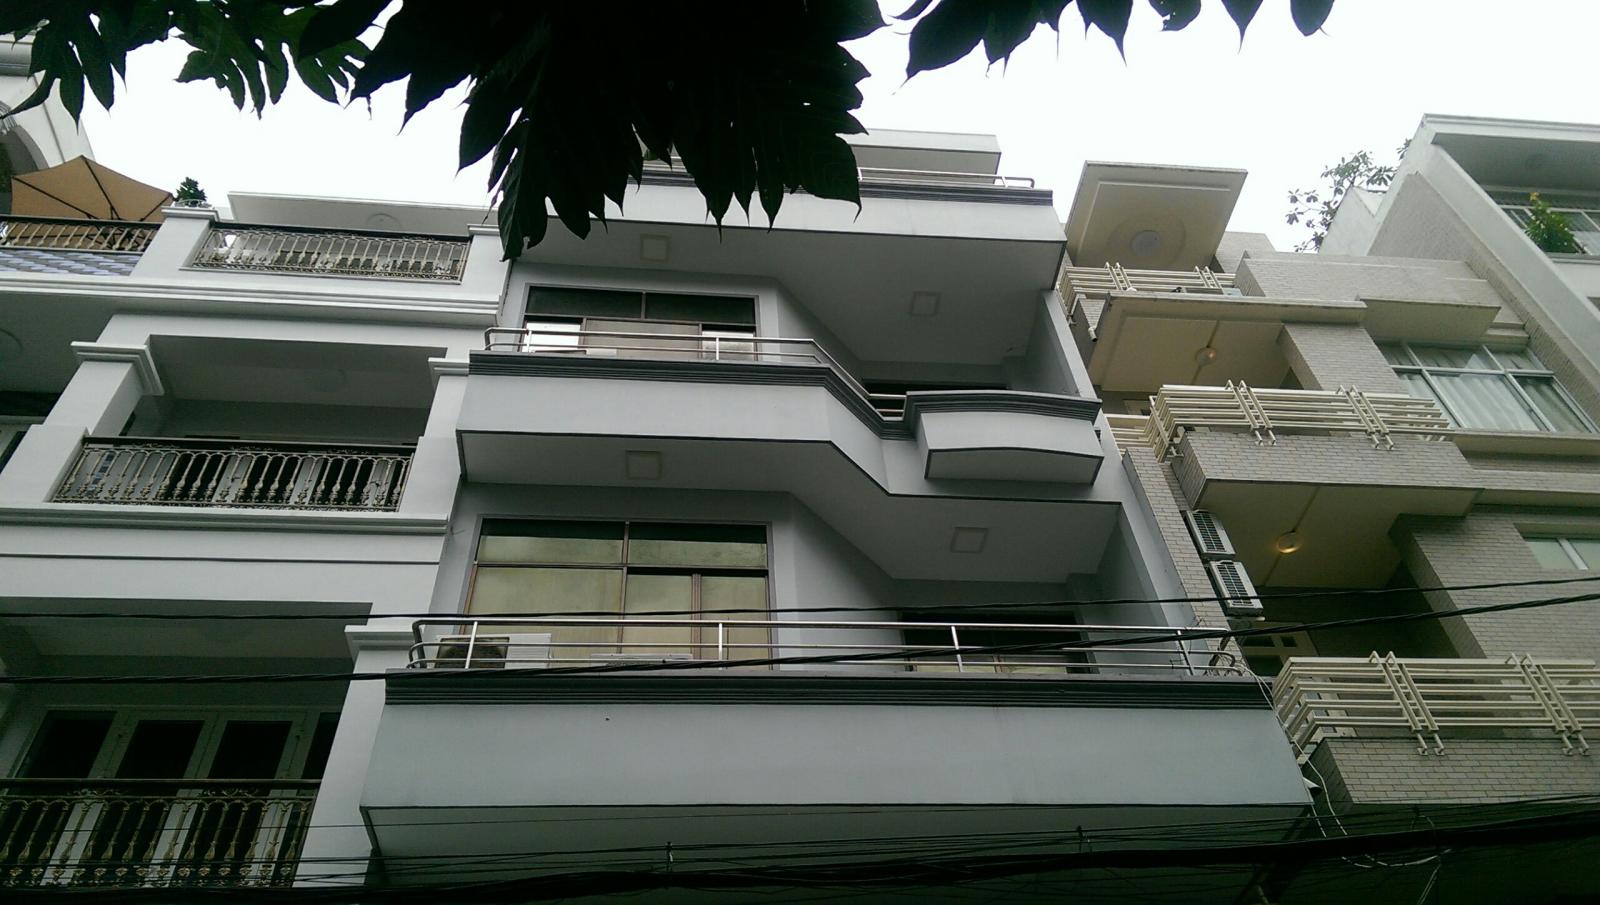 Bán gấp nhà mới 90% Nguyễn Trọng Tuyển, 3 lầu, ngang 7m, giá 6.9 tỷ còn bớt.